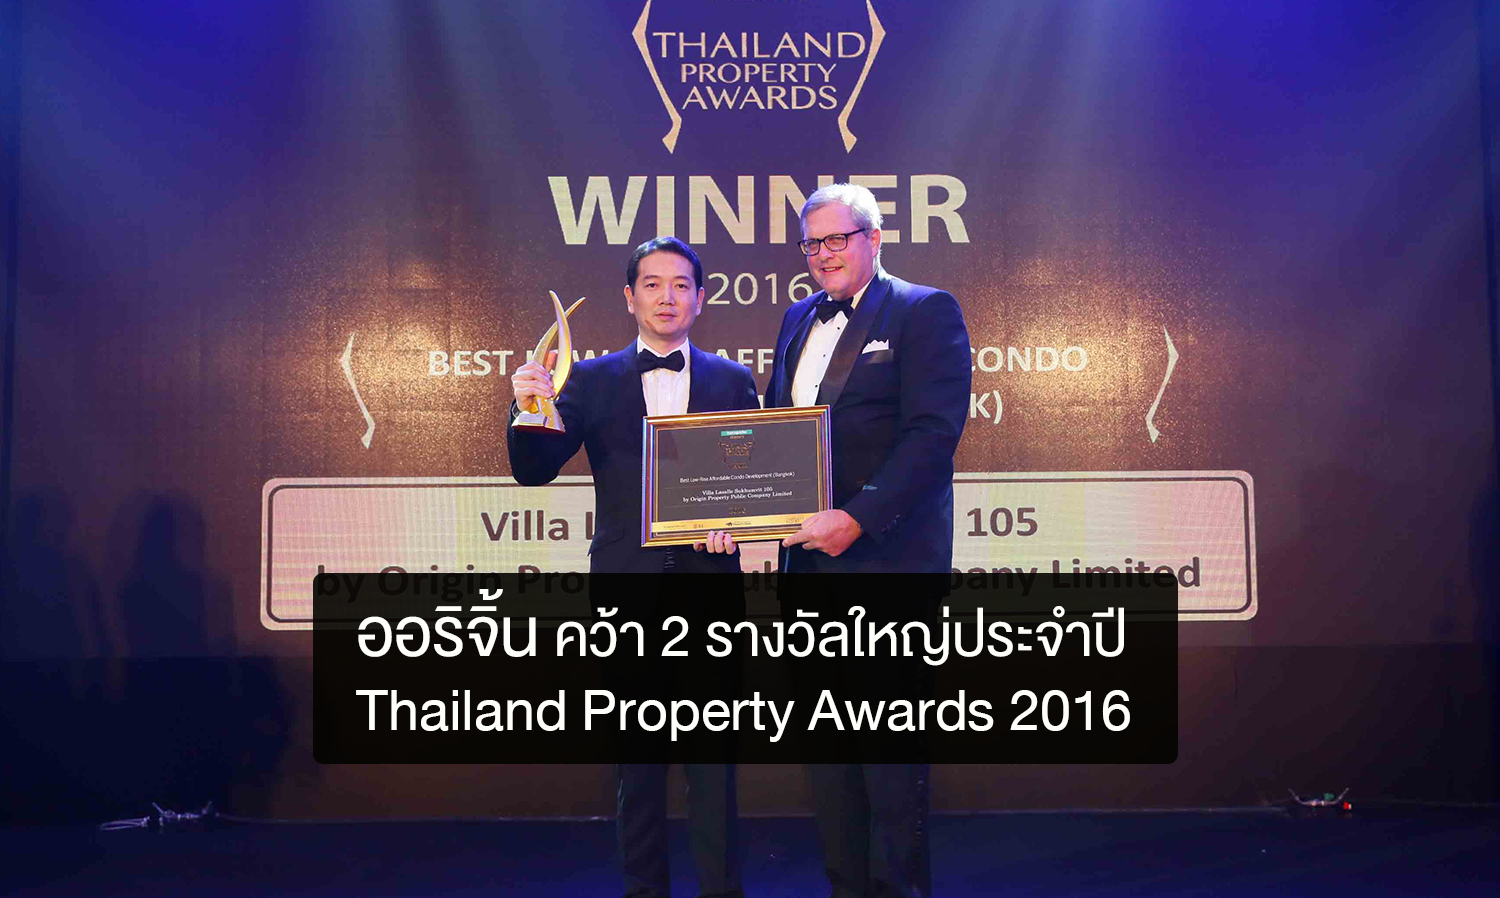 ออริจิ้น คว้า 2 รางวัลใหญ่ประจำปีในงาน Thailand Property Awards 2016 ครั้งที่ 11